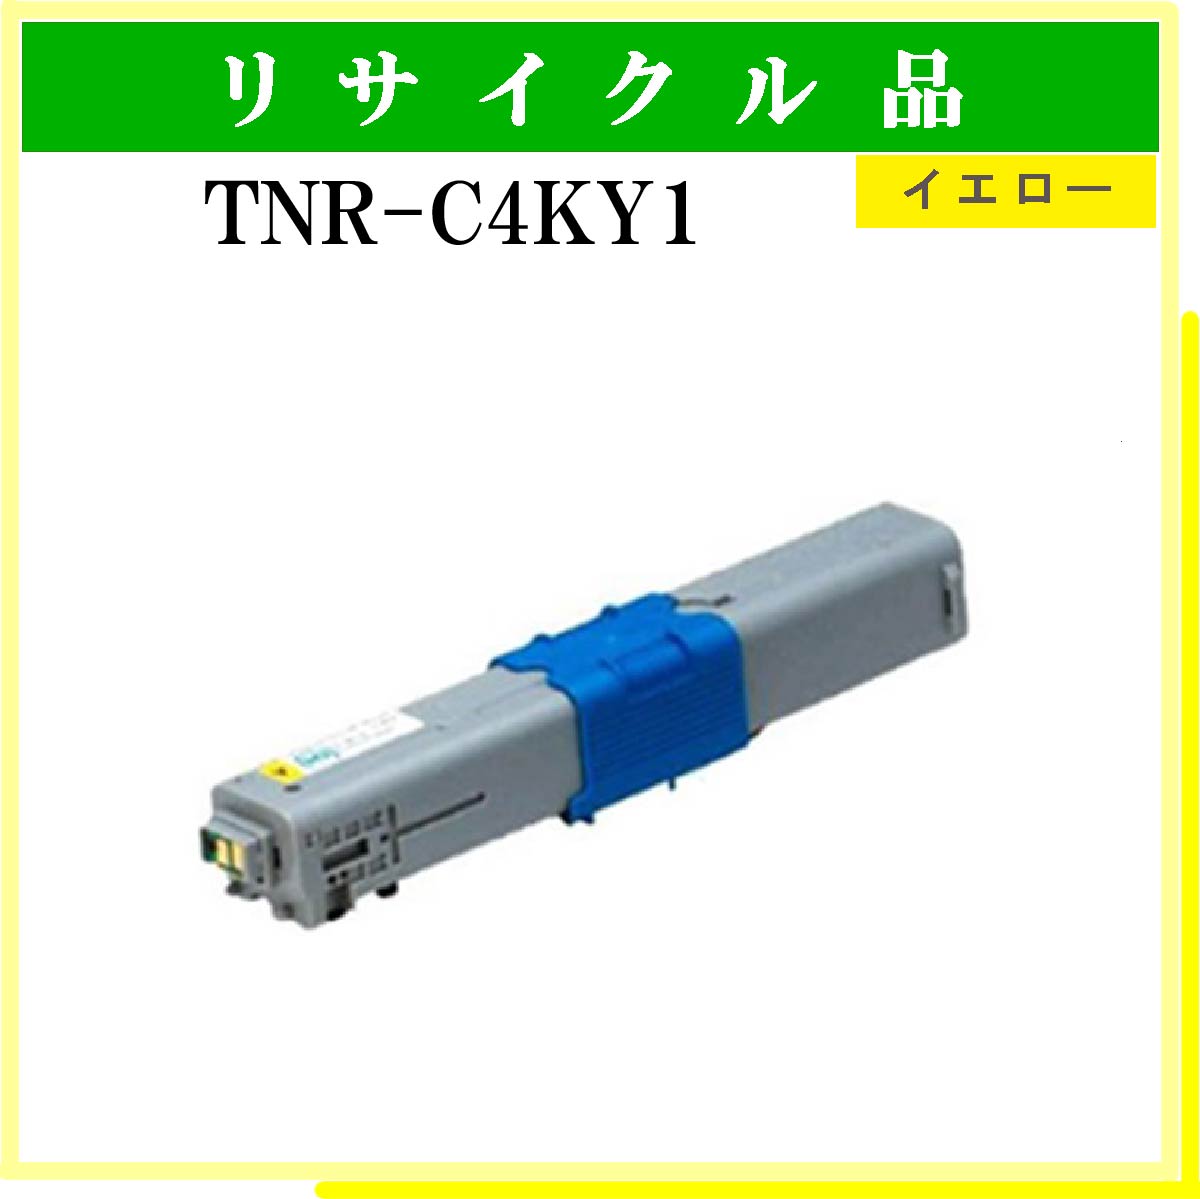 TNR-C4KY1